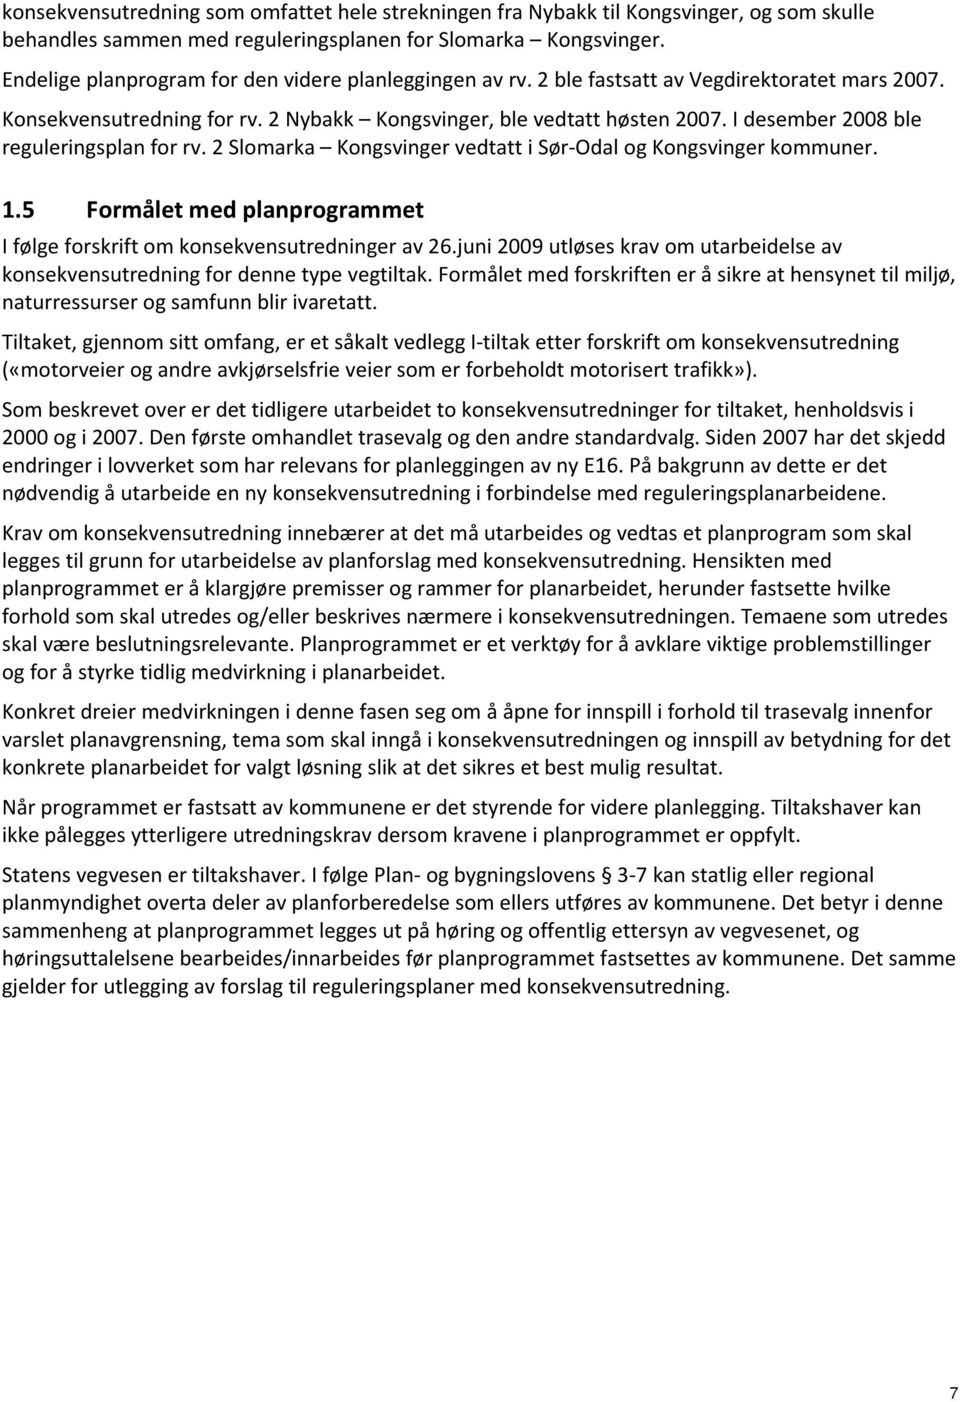 I desember 2008 ble reguleringsplan for rv. 2 Slomarka Kongsvinger vedtatt i Sør-Odal og Kongsvinger kommuner. 1.5 Formålet med planprogrammet I følge forskrift om konsekvensutredninger av 26.